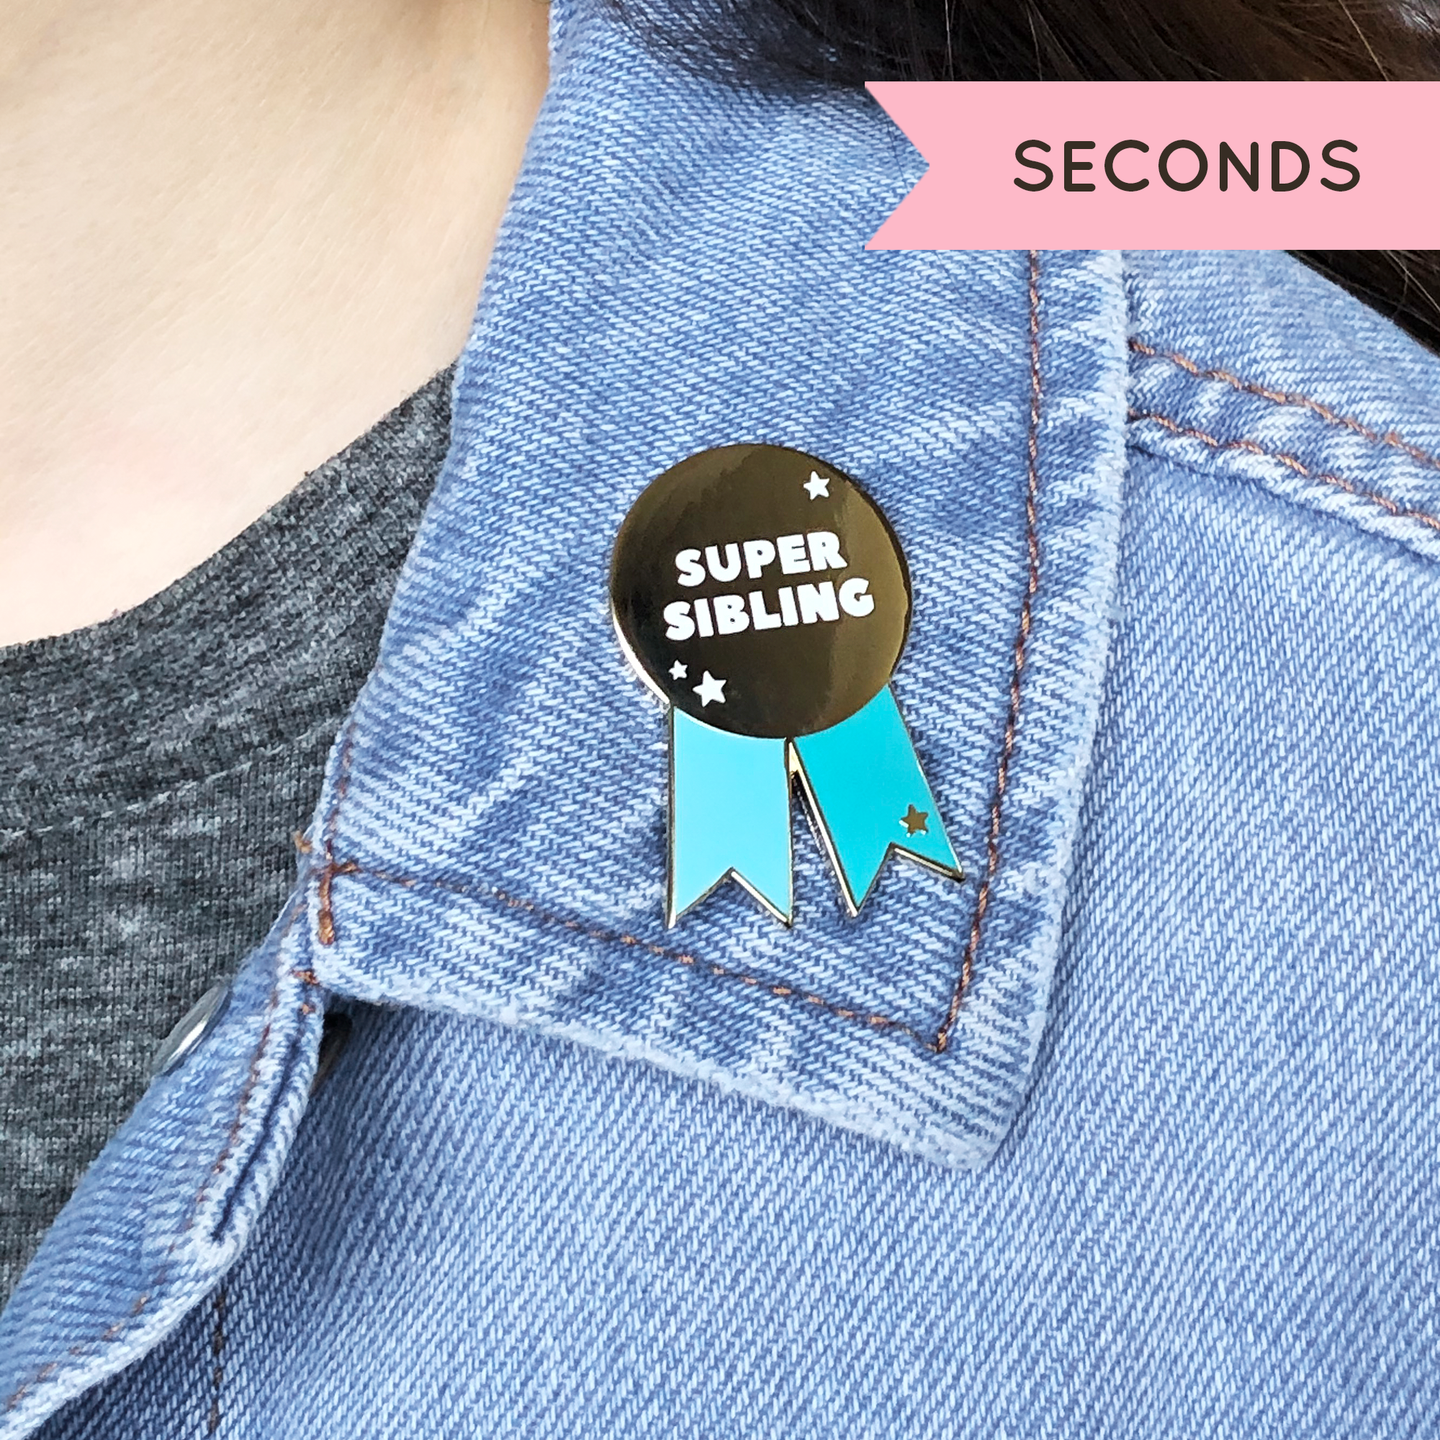 SECONDS / Super Sibling Medal Enamel Pin Badge